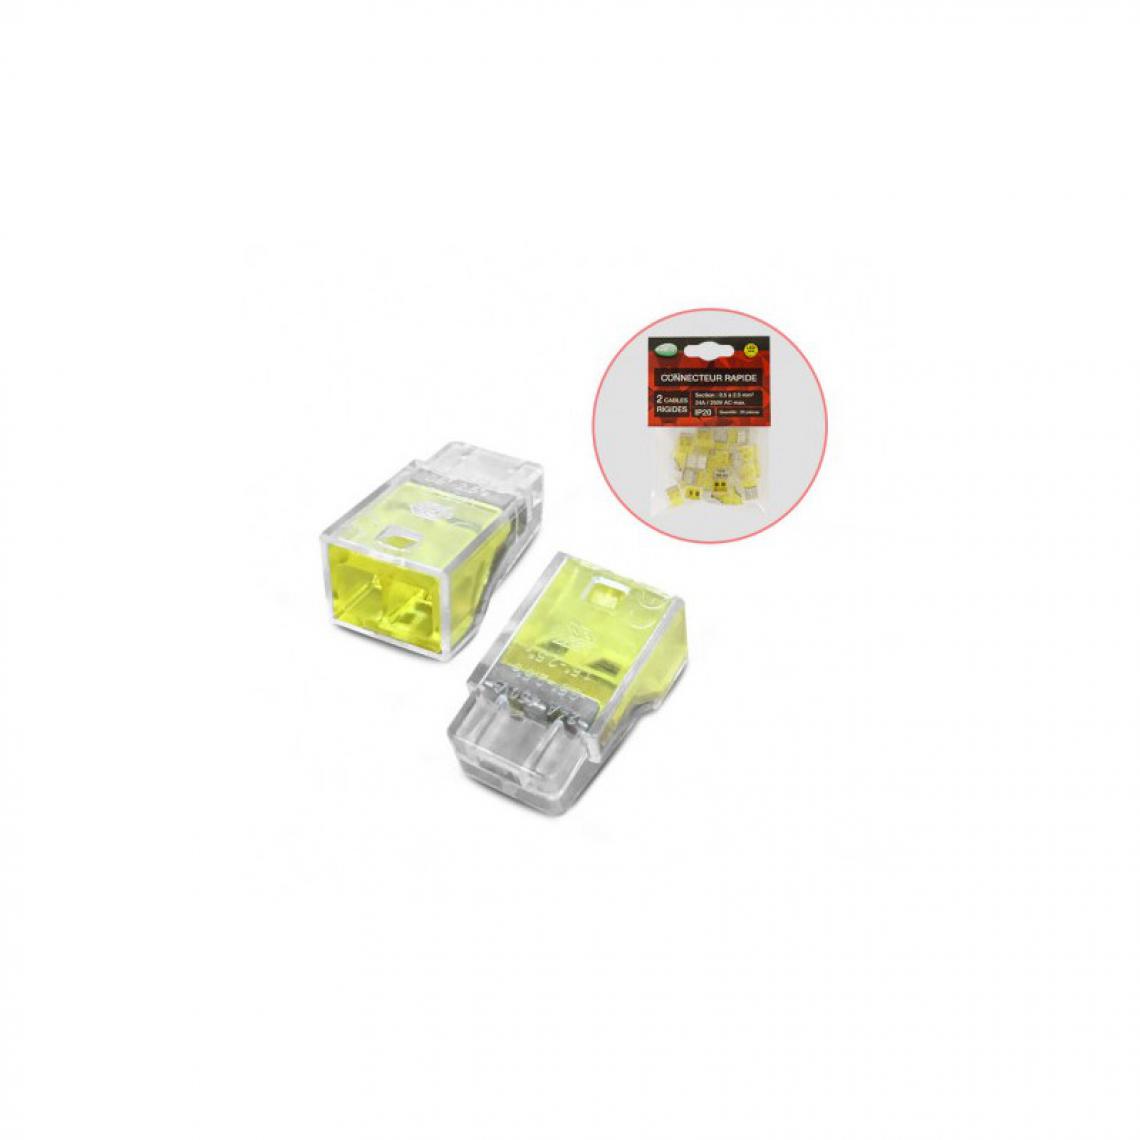 Vision-El - Connecteur rapide 2 fils rigides polybag 20pcs - Ampoules LED